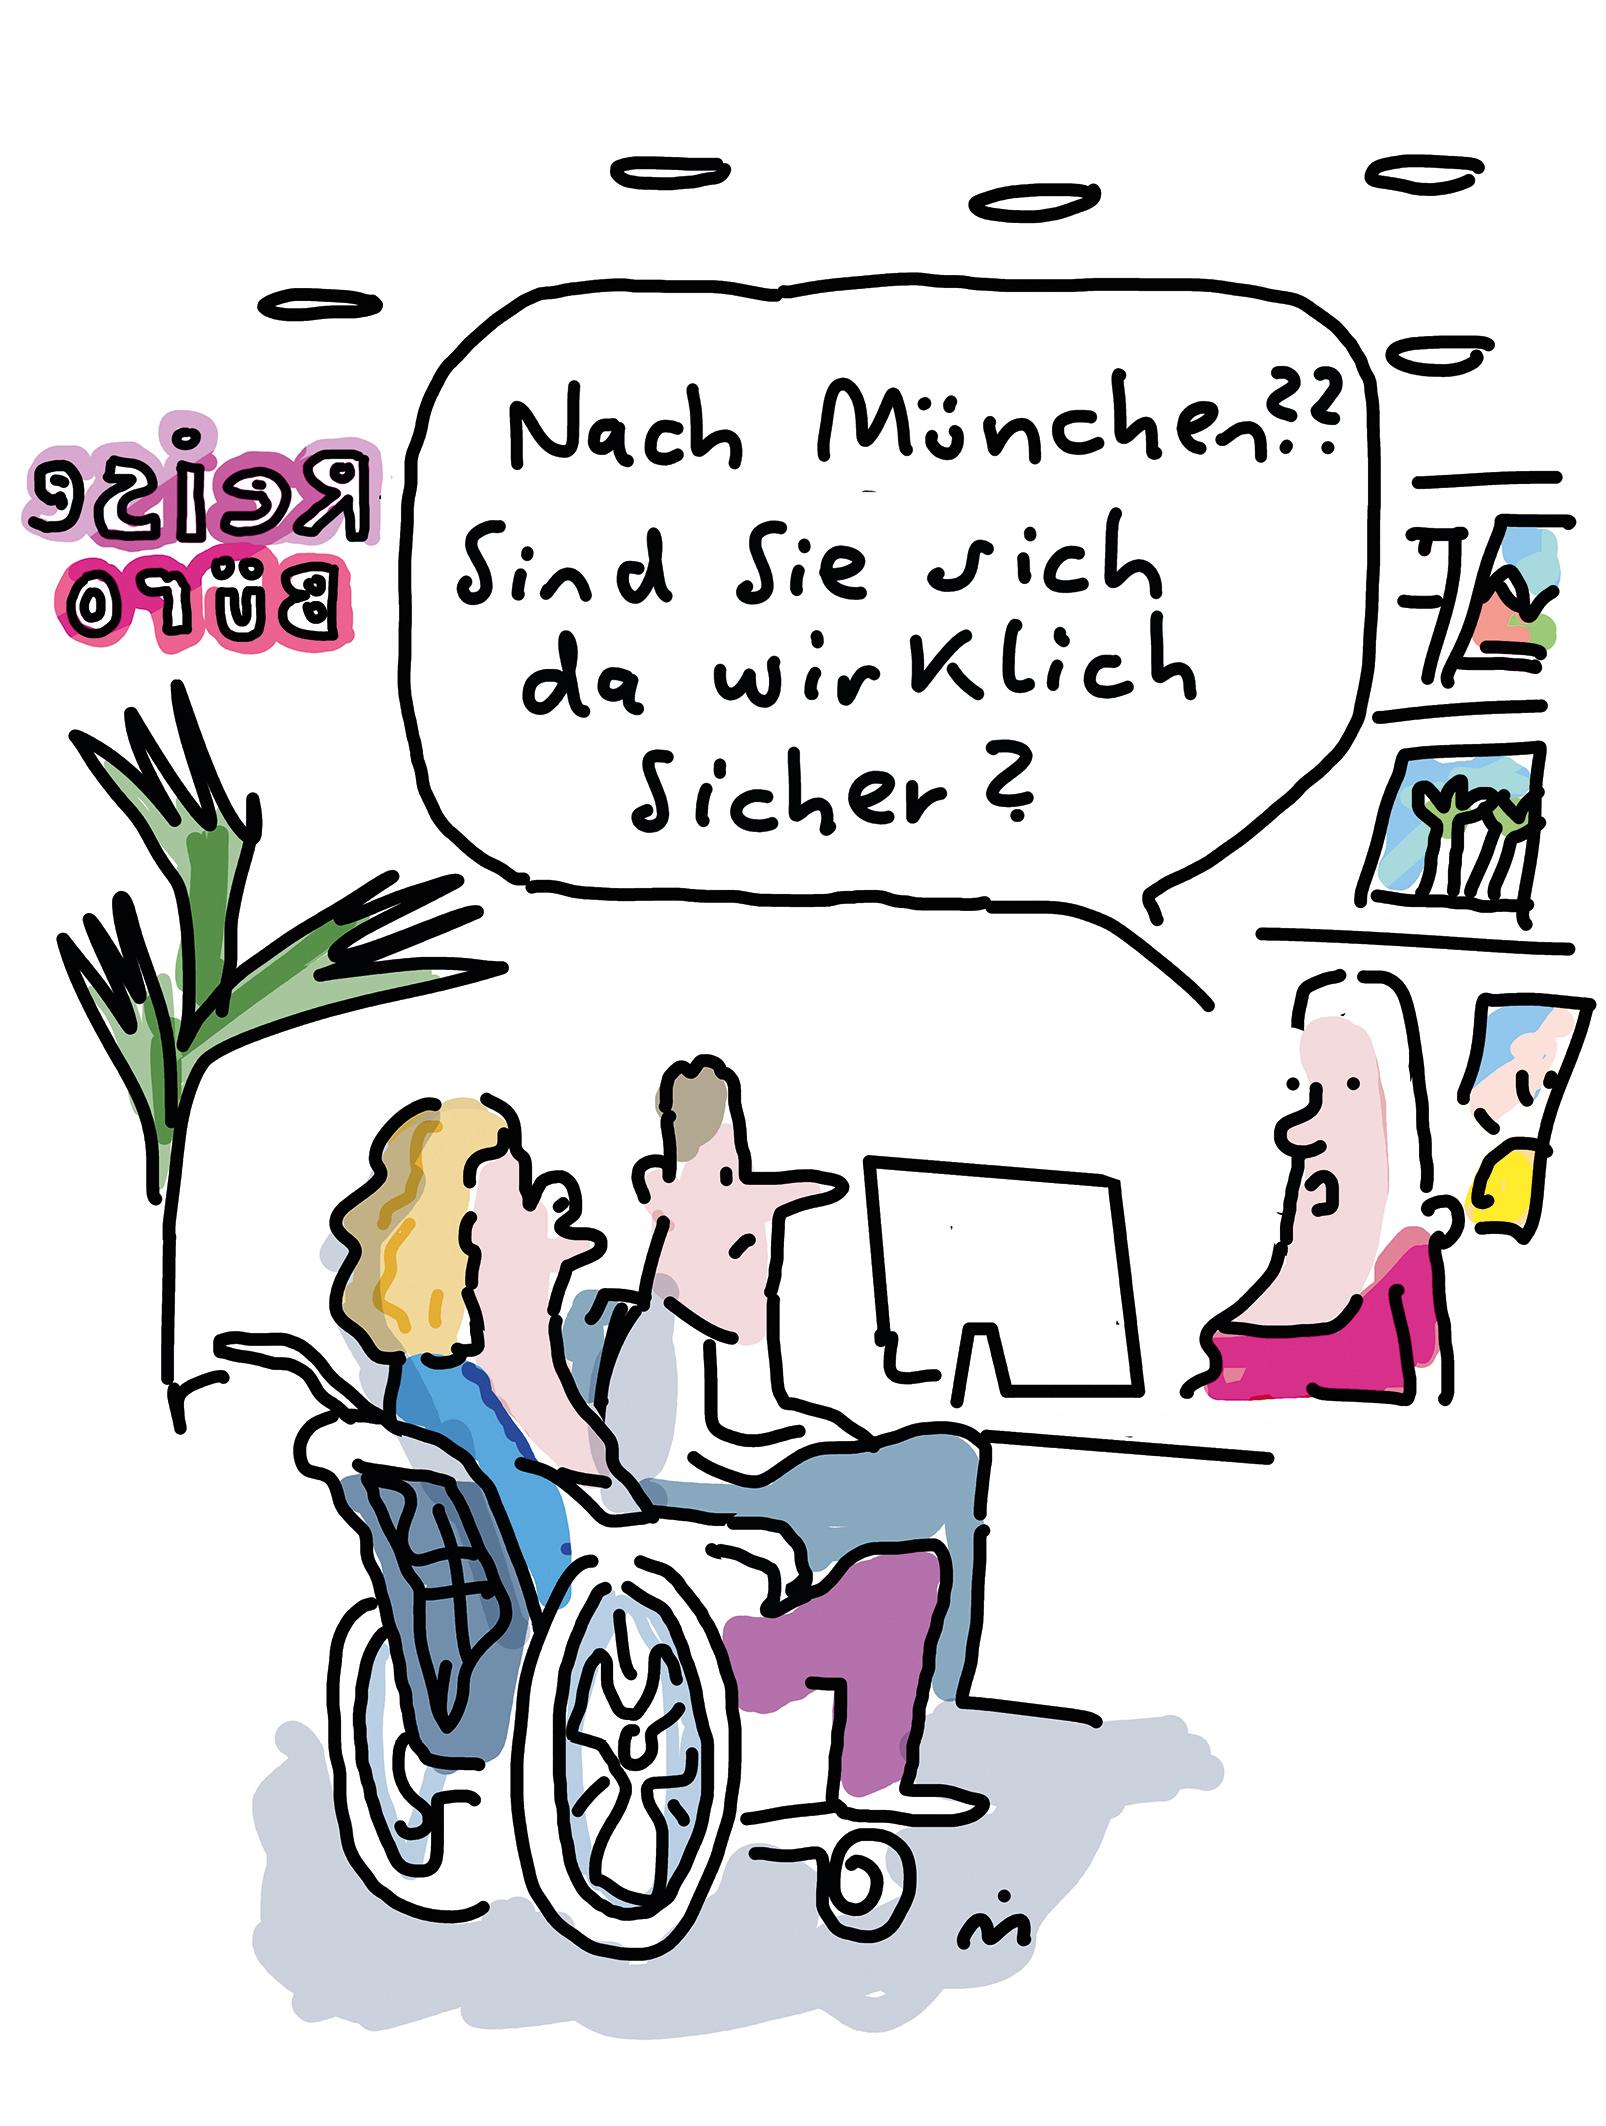 Mann und Frau im Rollstuhl im Reisebüro. Reisekauffrau fragt "Nach München? Sind Sie sich da wirklich sicher?